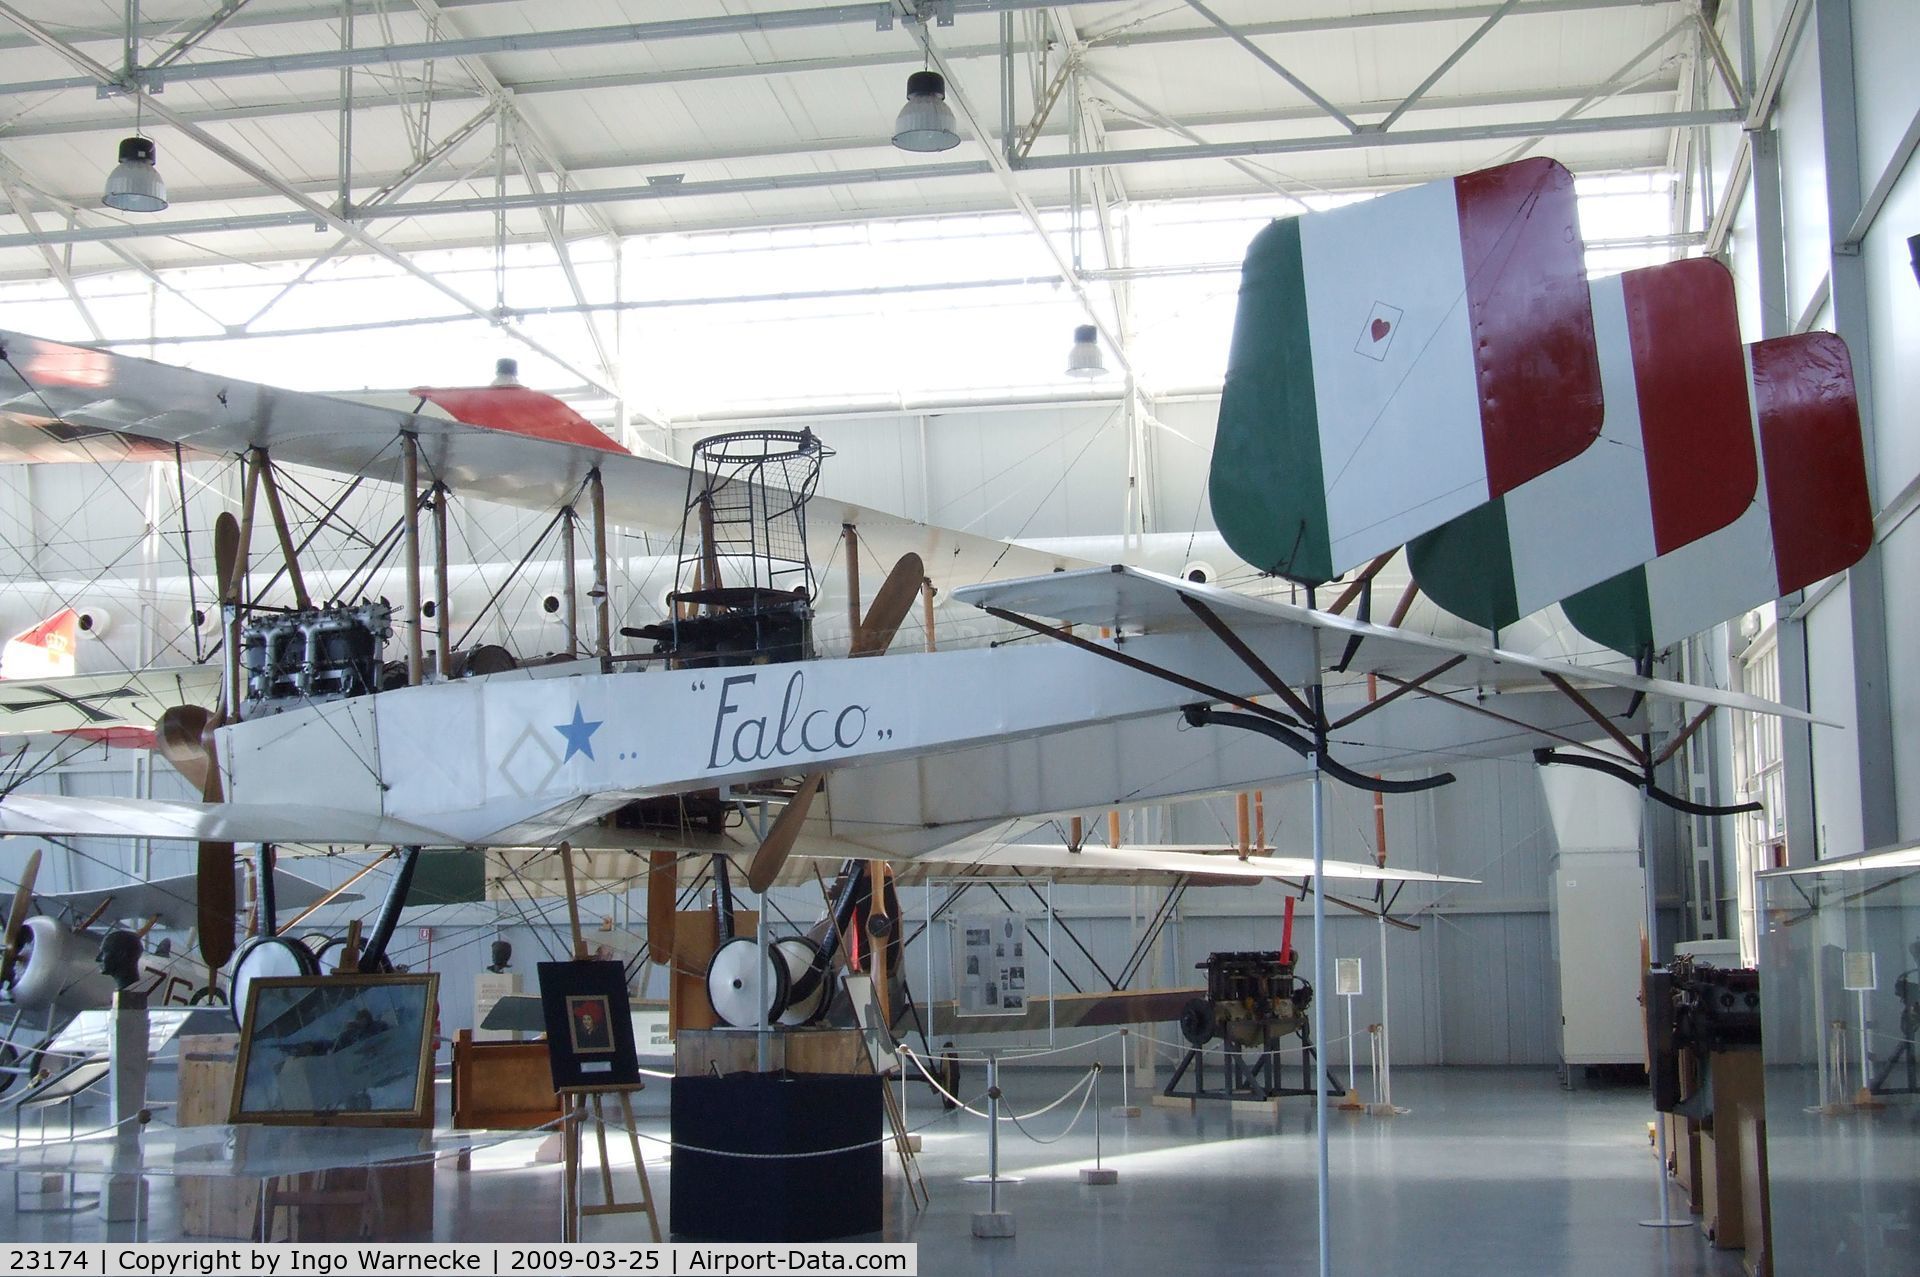 23174, 1916 Caproni Ca.3 Falco C/N unknown_23174, Caproni Ca.3 (Ca.33) at the Museo storico dell'Aeronautica Militare, Vigna di Valle